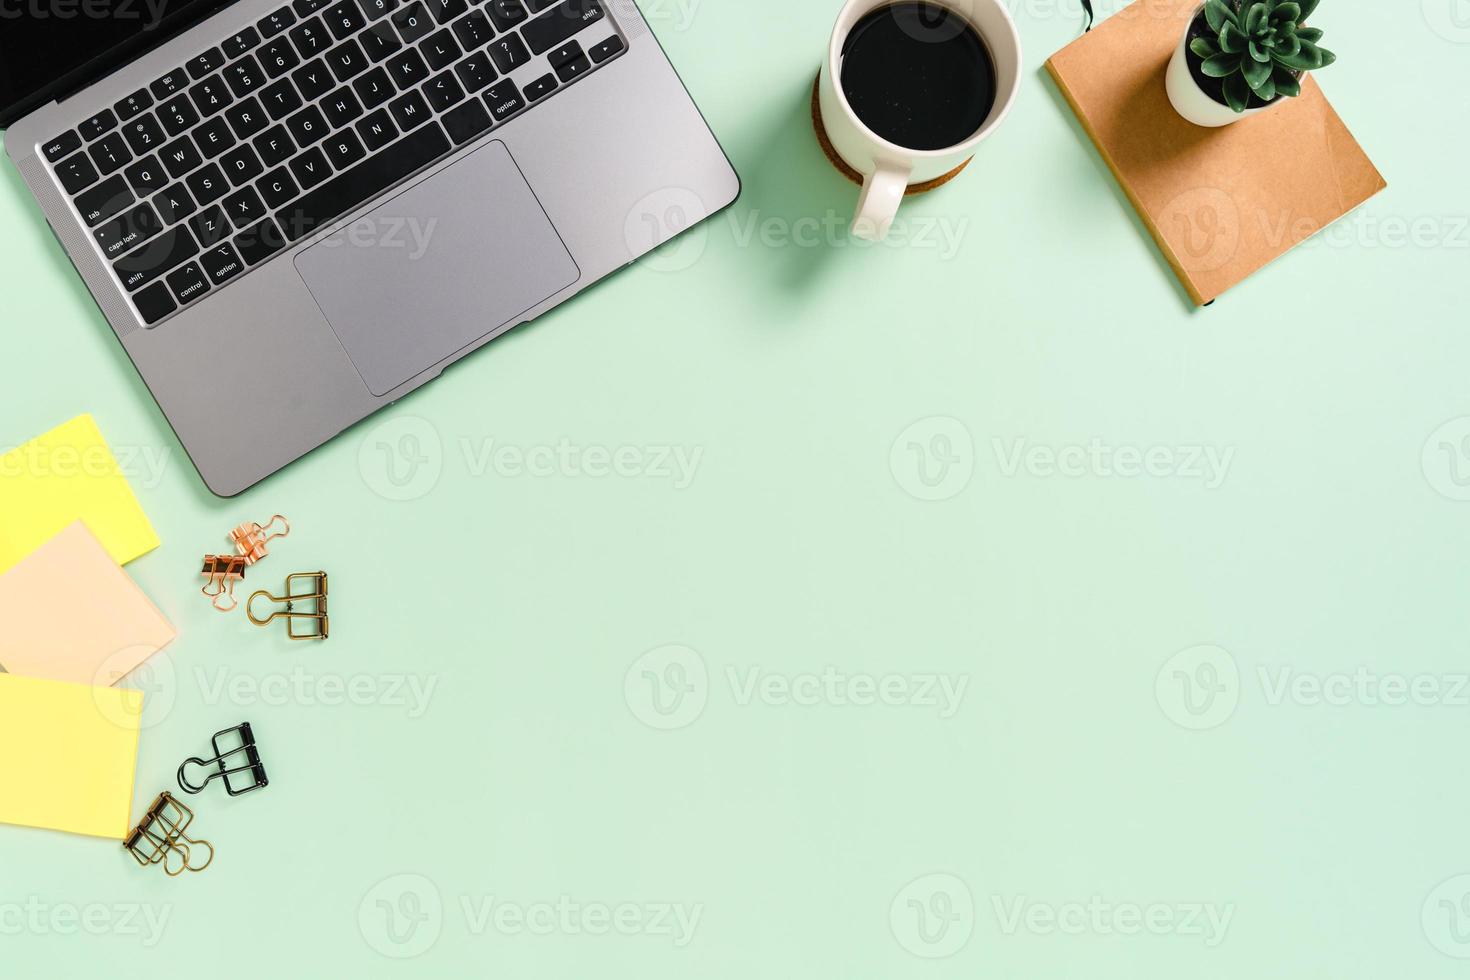 minimale werkruimte - creatieve platliggende foto van werkruimtebureau. bovenaanzicht bureau met laptop en koffiekopje op pastel groene kleur achtergrond. bovenaanzicht met kopieerruimte, platliggende fotografie.